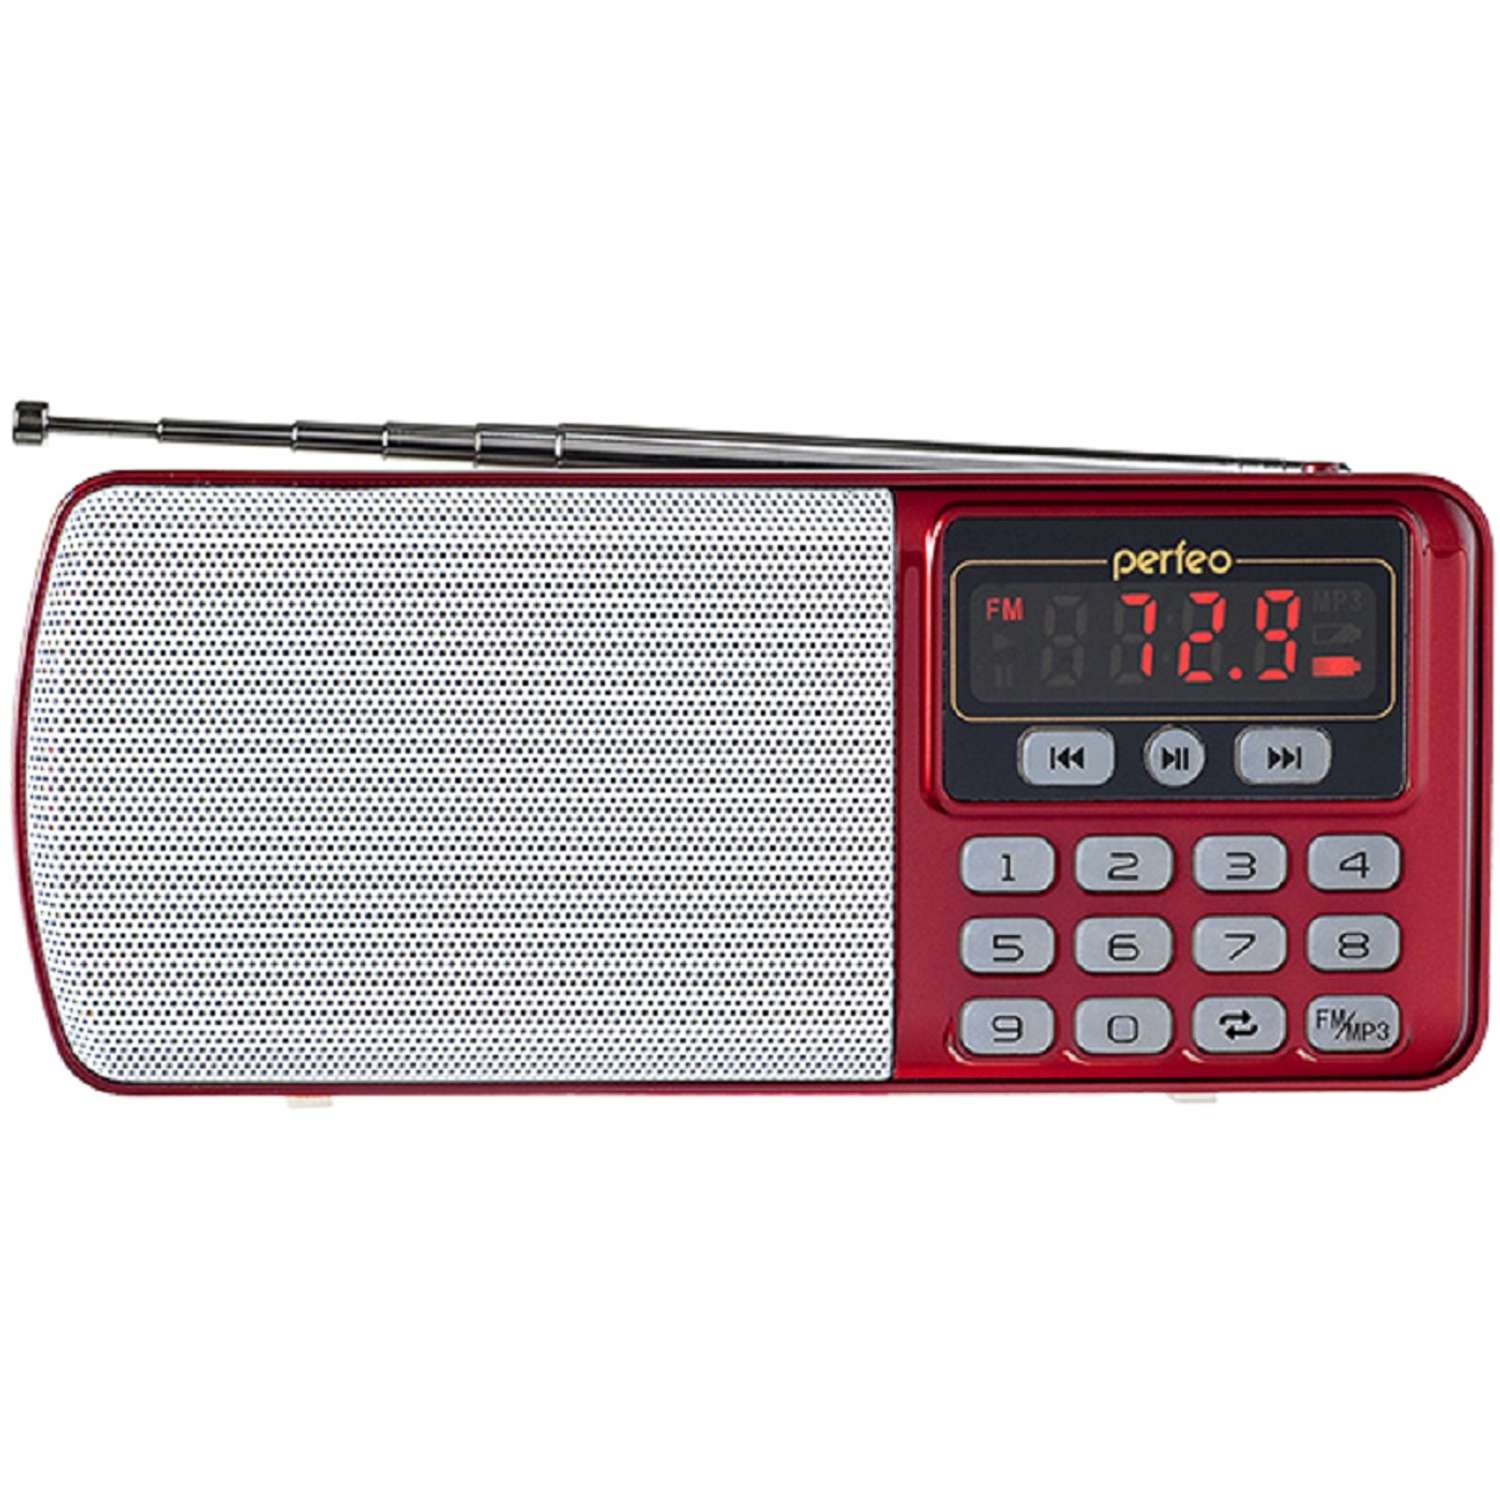 Радиоприемник Perfeo цифровой ЕГЕРЬ FM+ 70-108МГц MP3 питание USB или BL5C красный i120-RED - фото 1